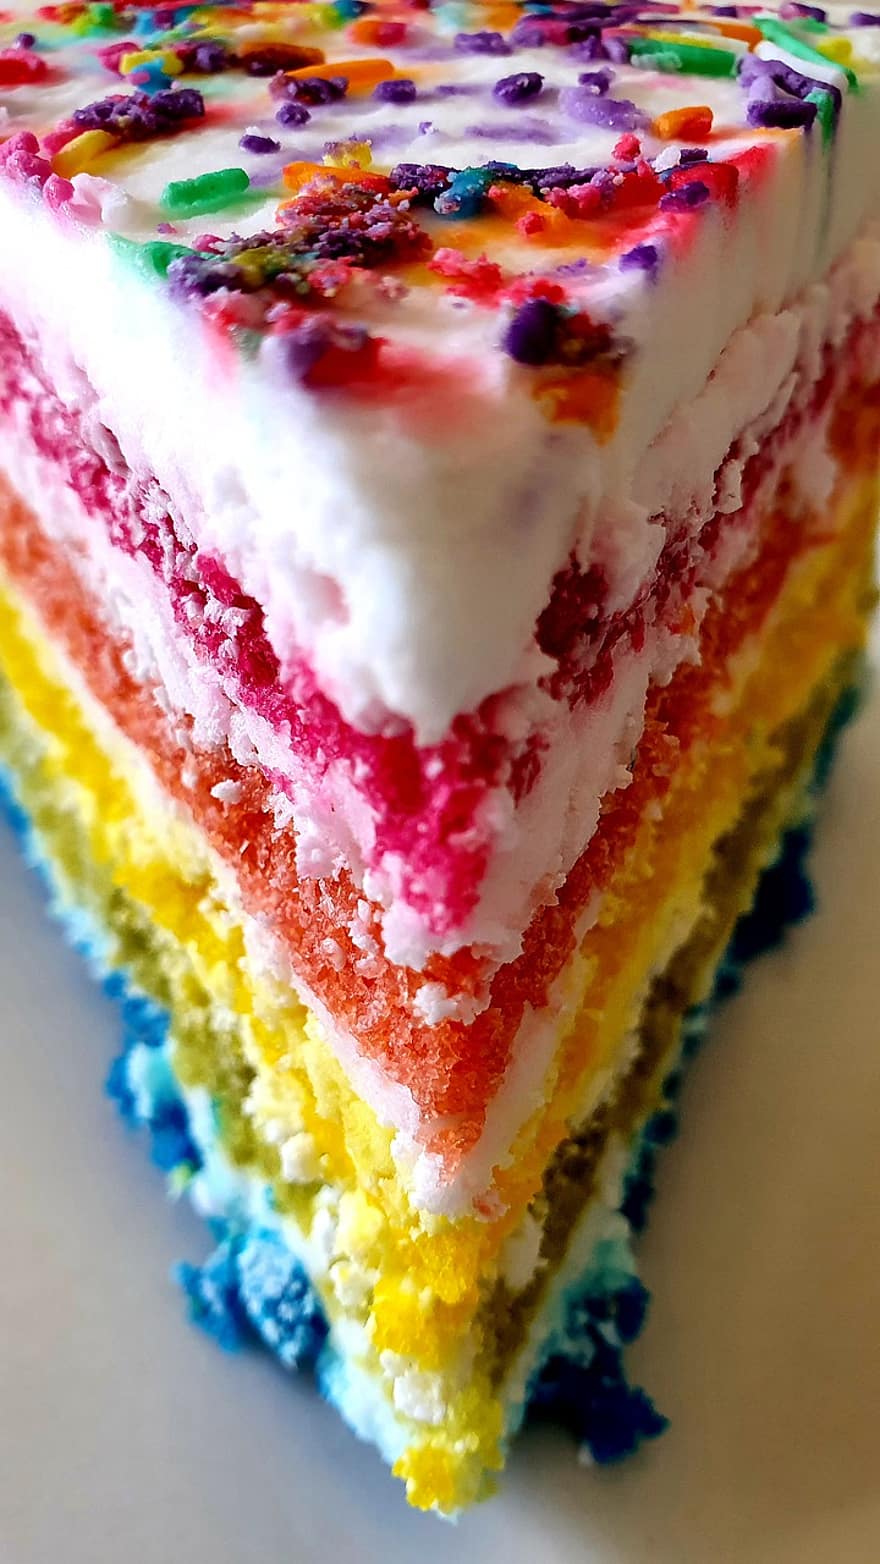 lgbt, LGBTI, regenboogcake, regenboog, cake, bakken, bakkerij, toetje, fijnproever, zoet eten, voedsel